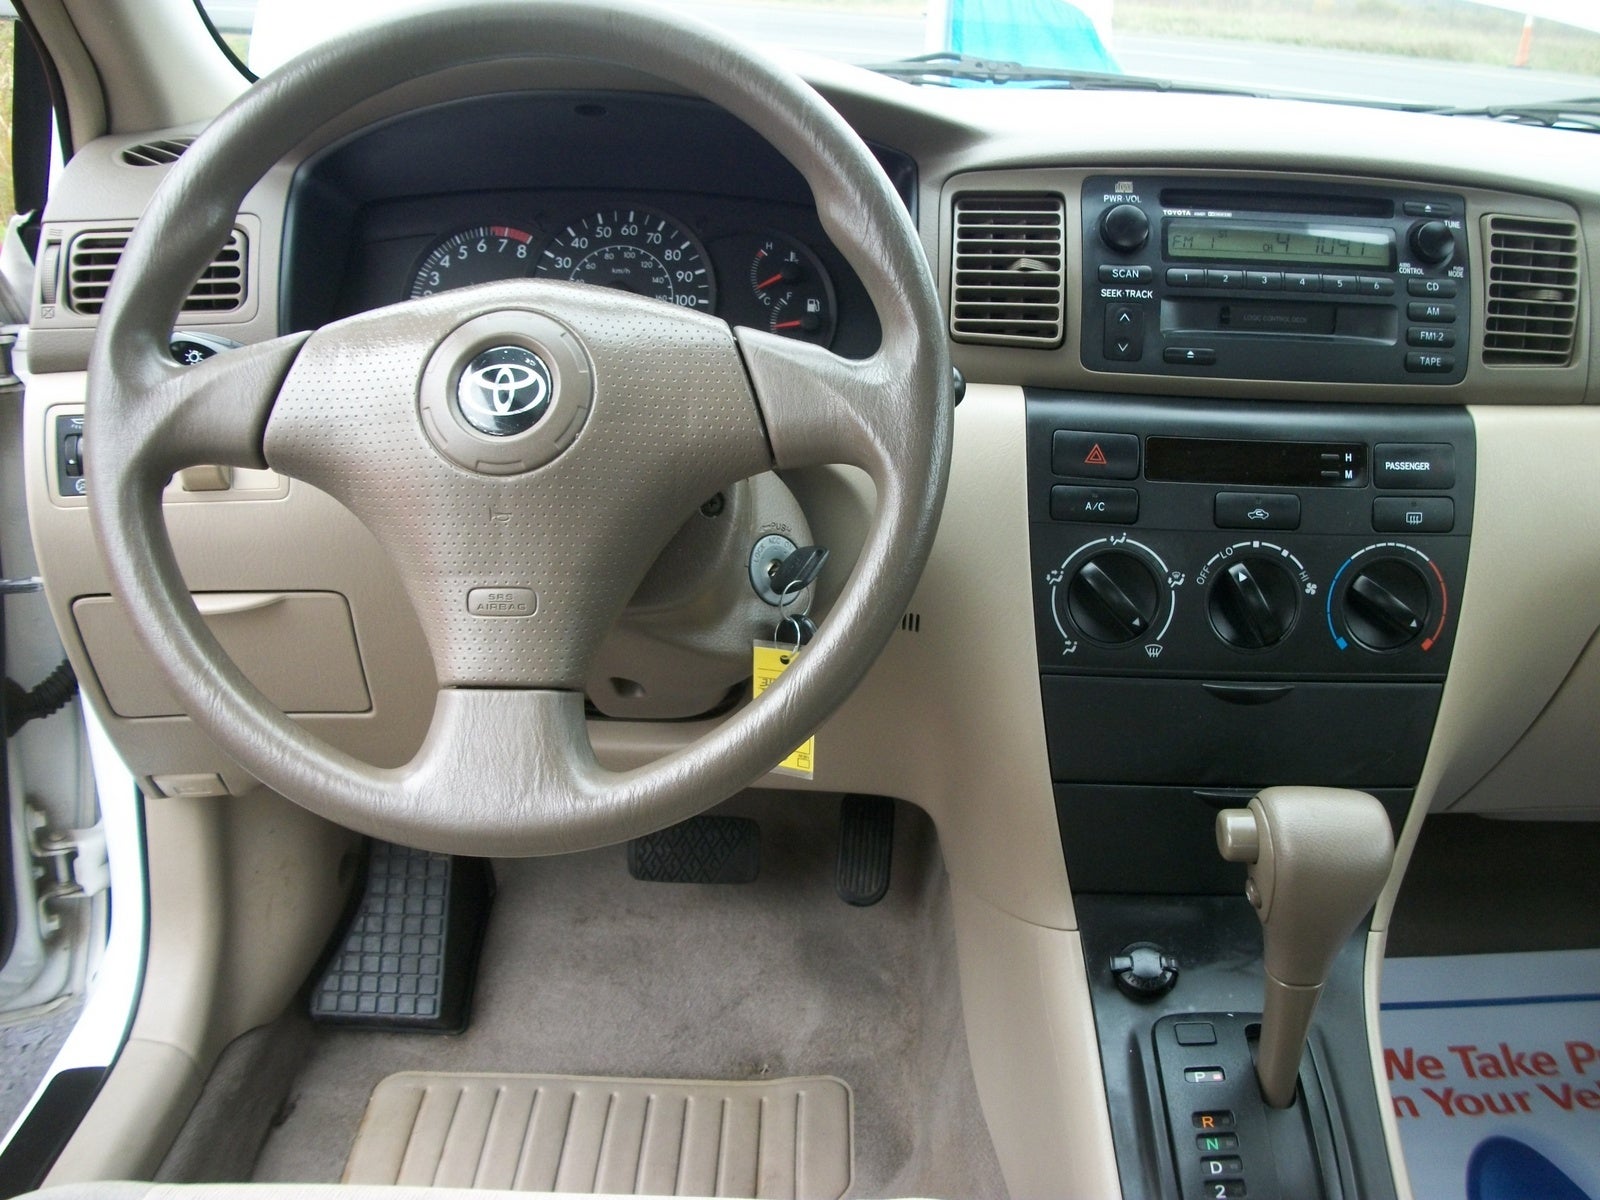 2003 Toyota Corolla - Interior Pictures - CarGurus